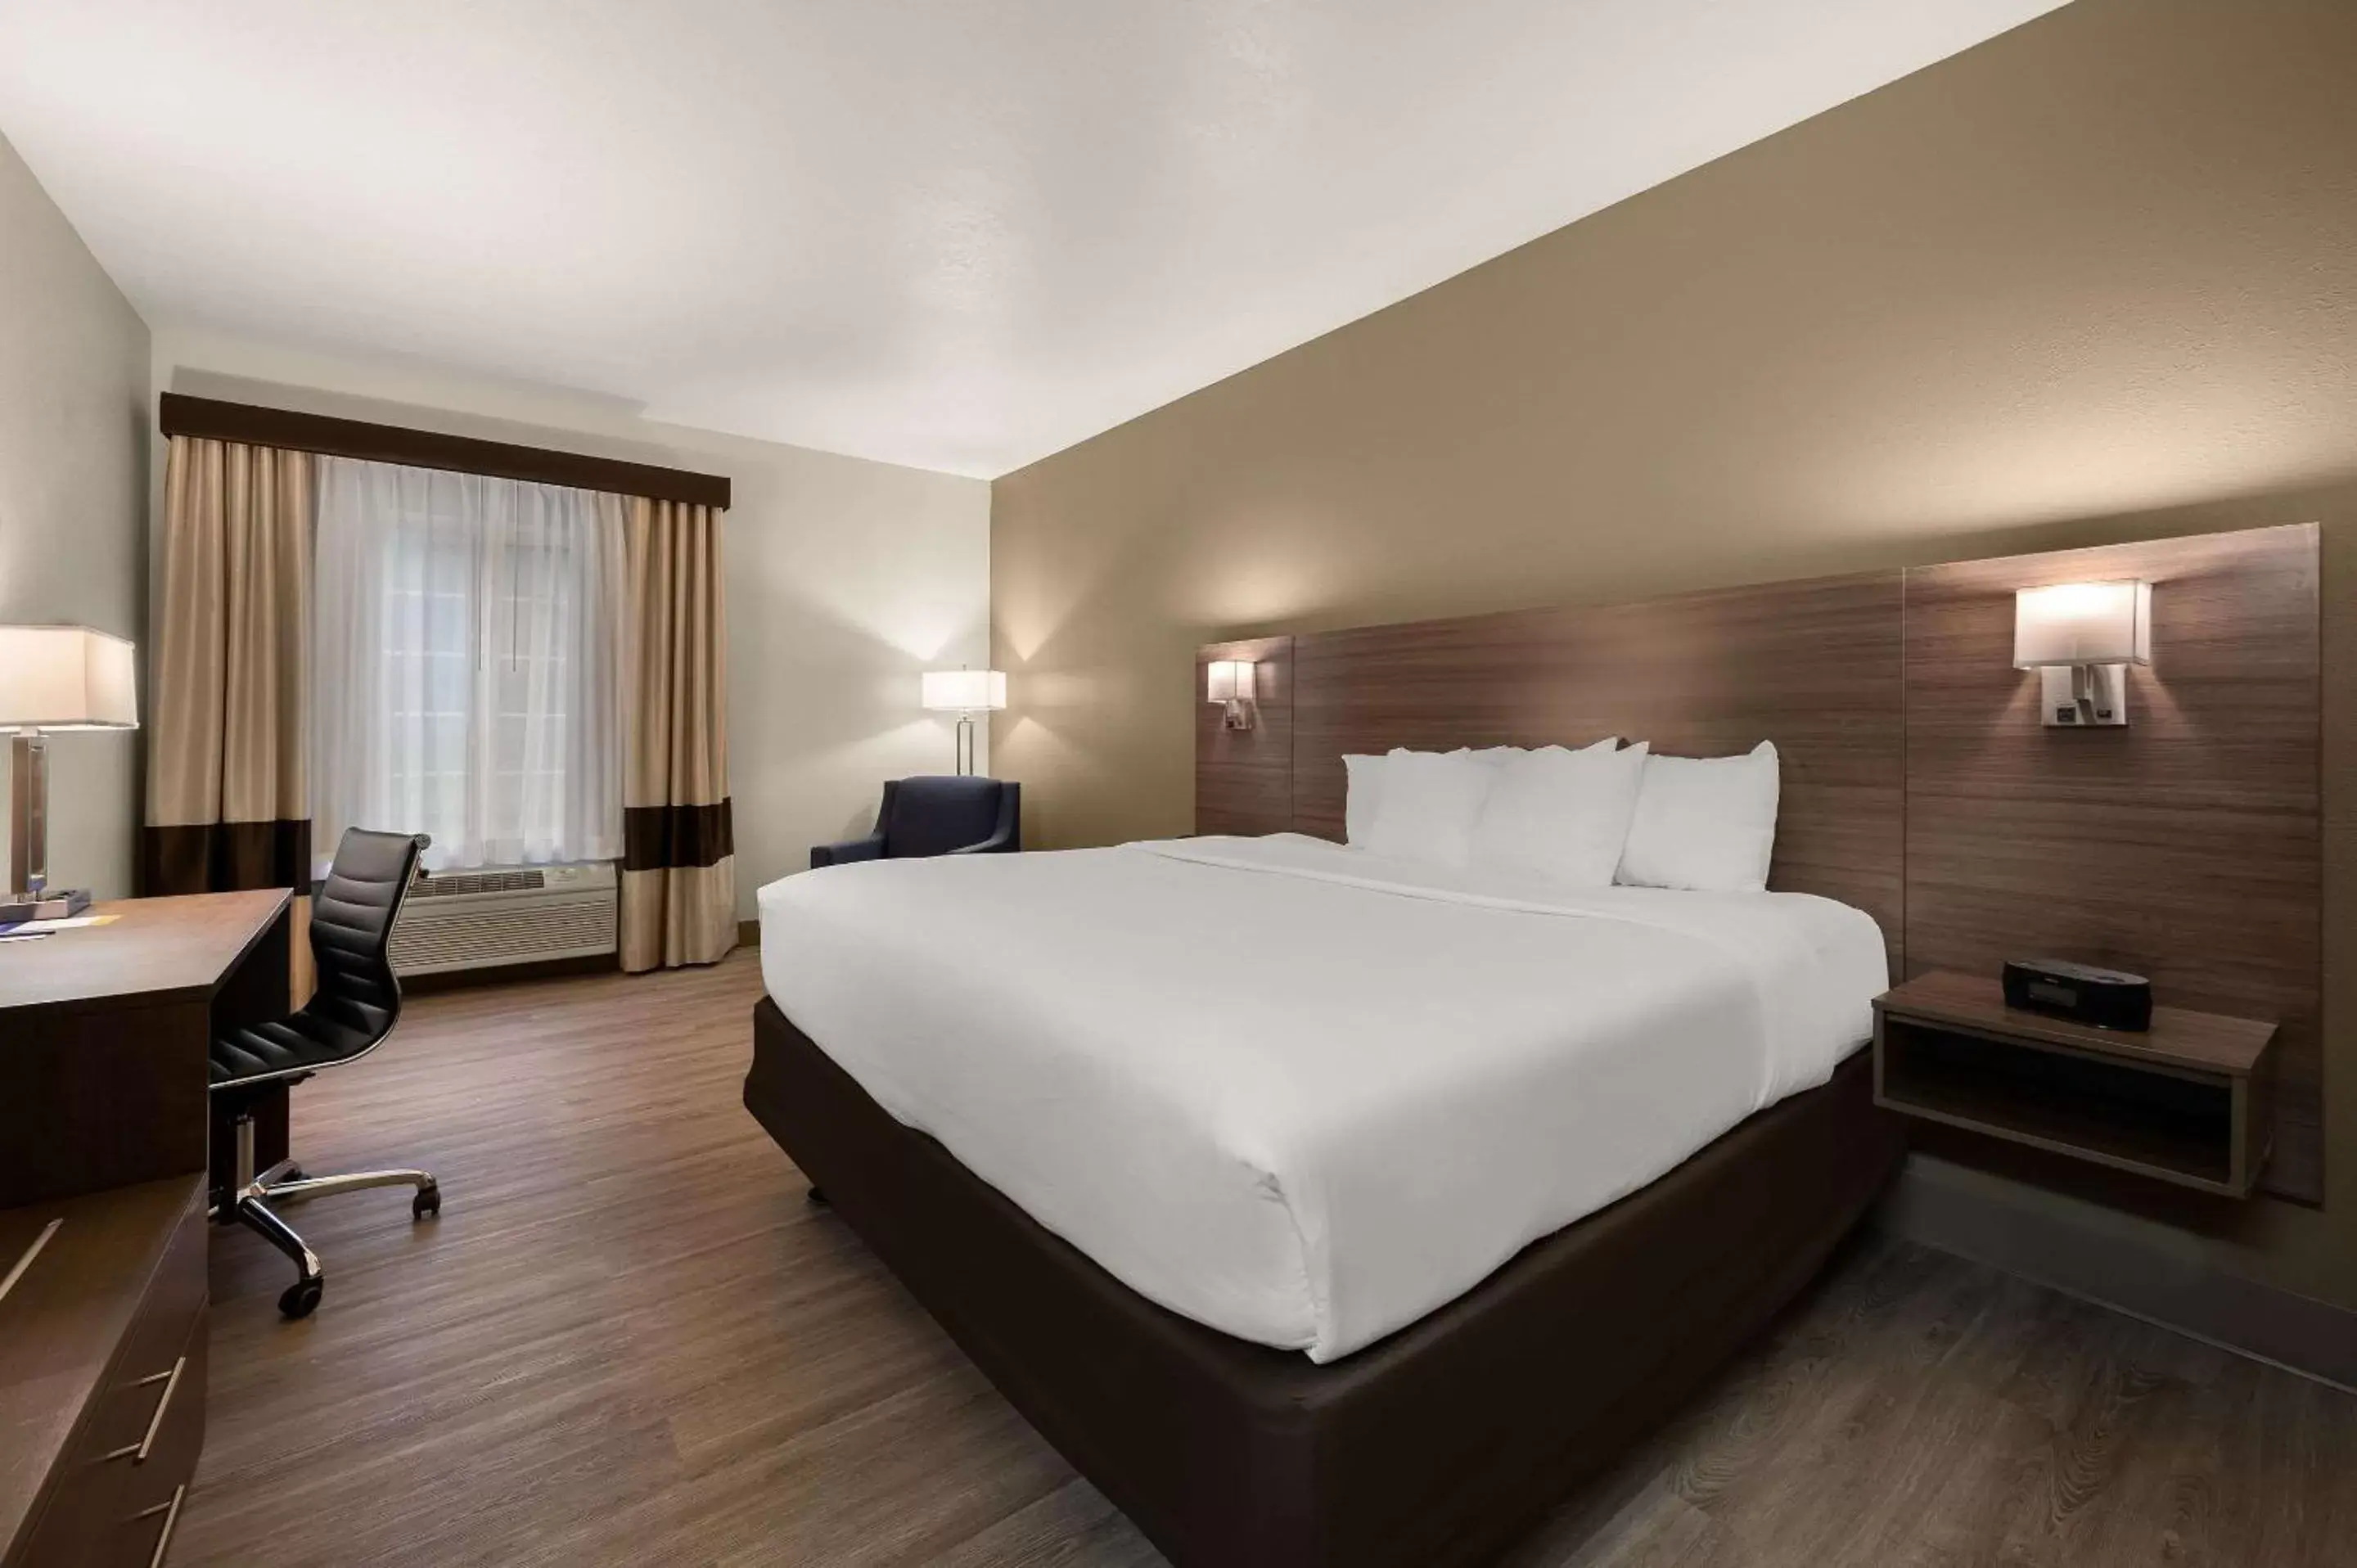 Bedroom, Bed in Comfort Inn & Suites Fenton